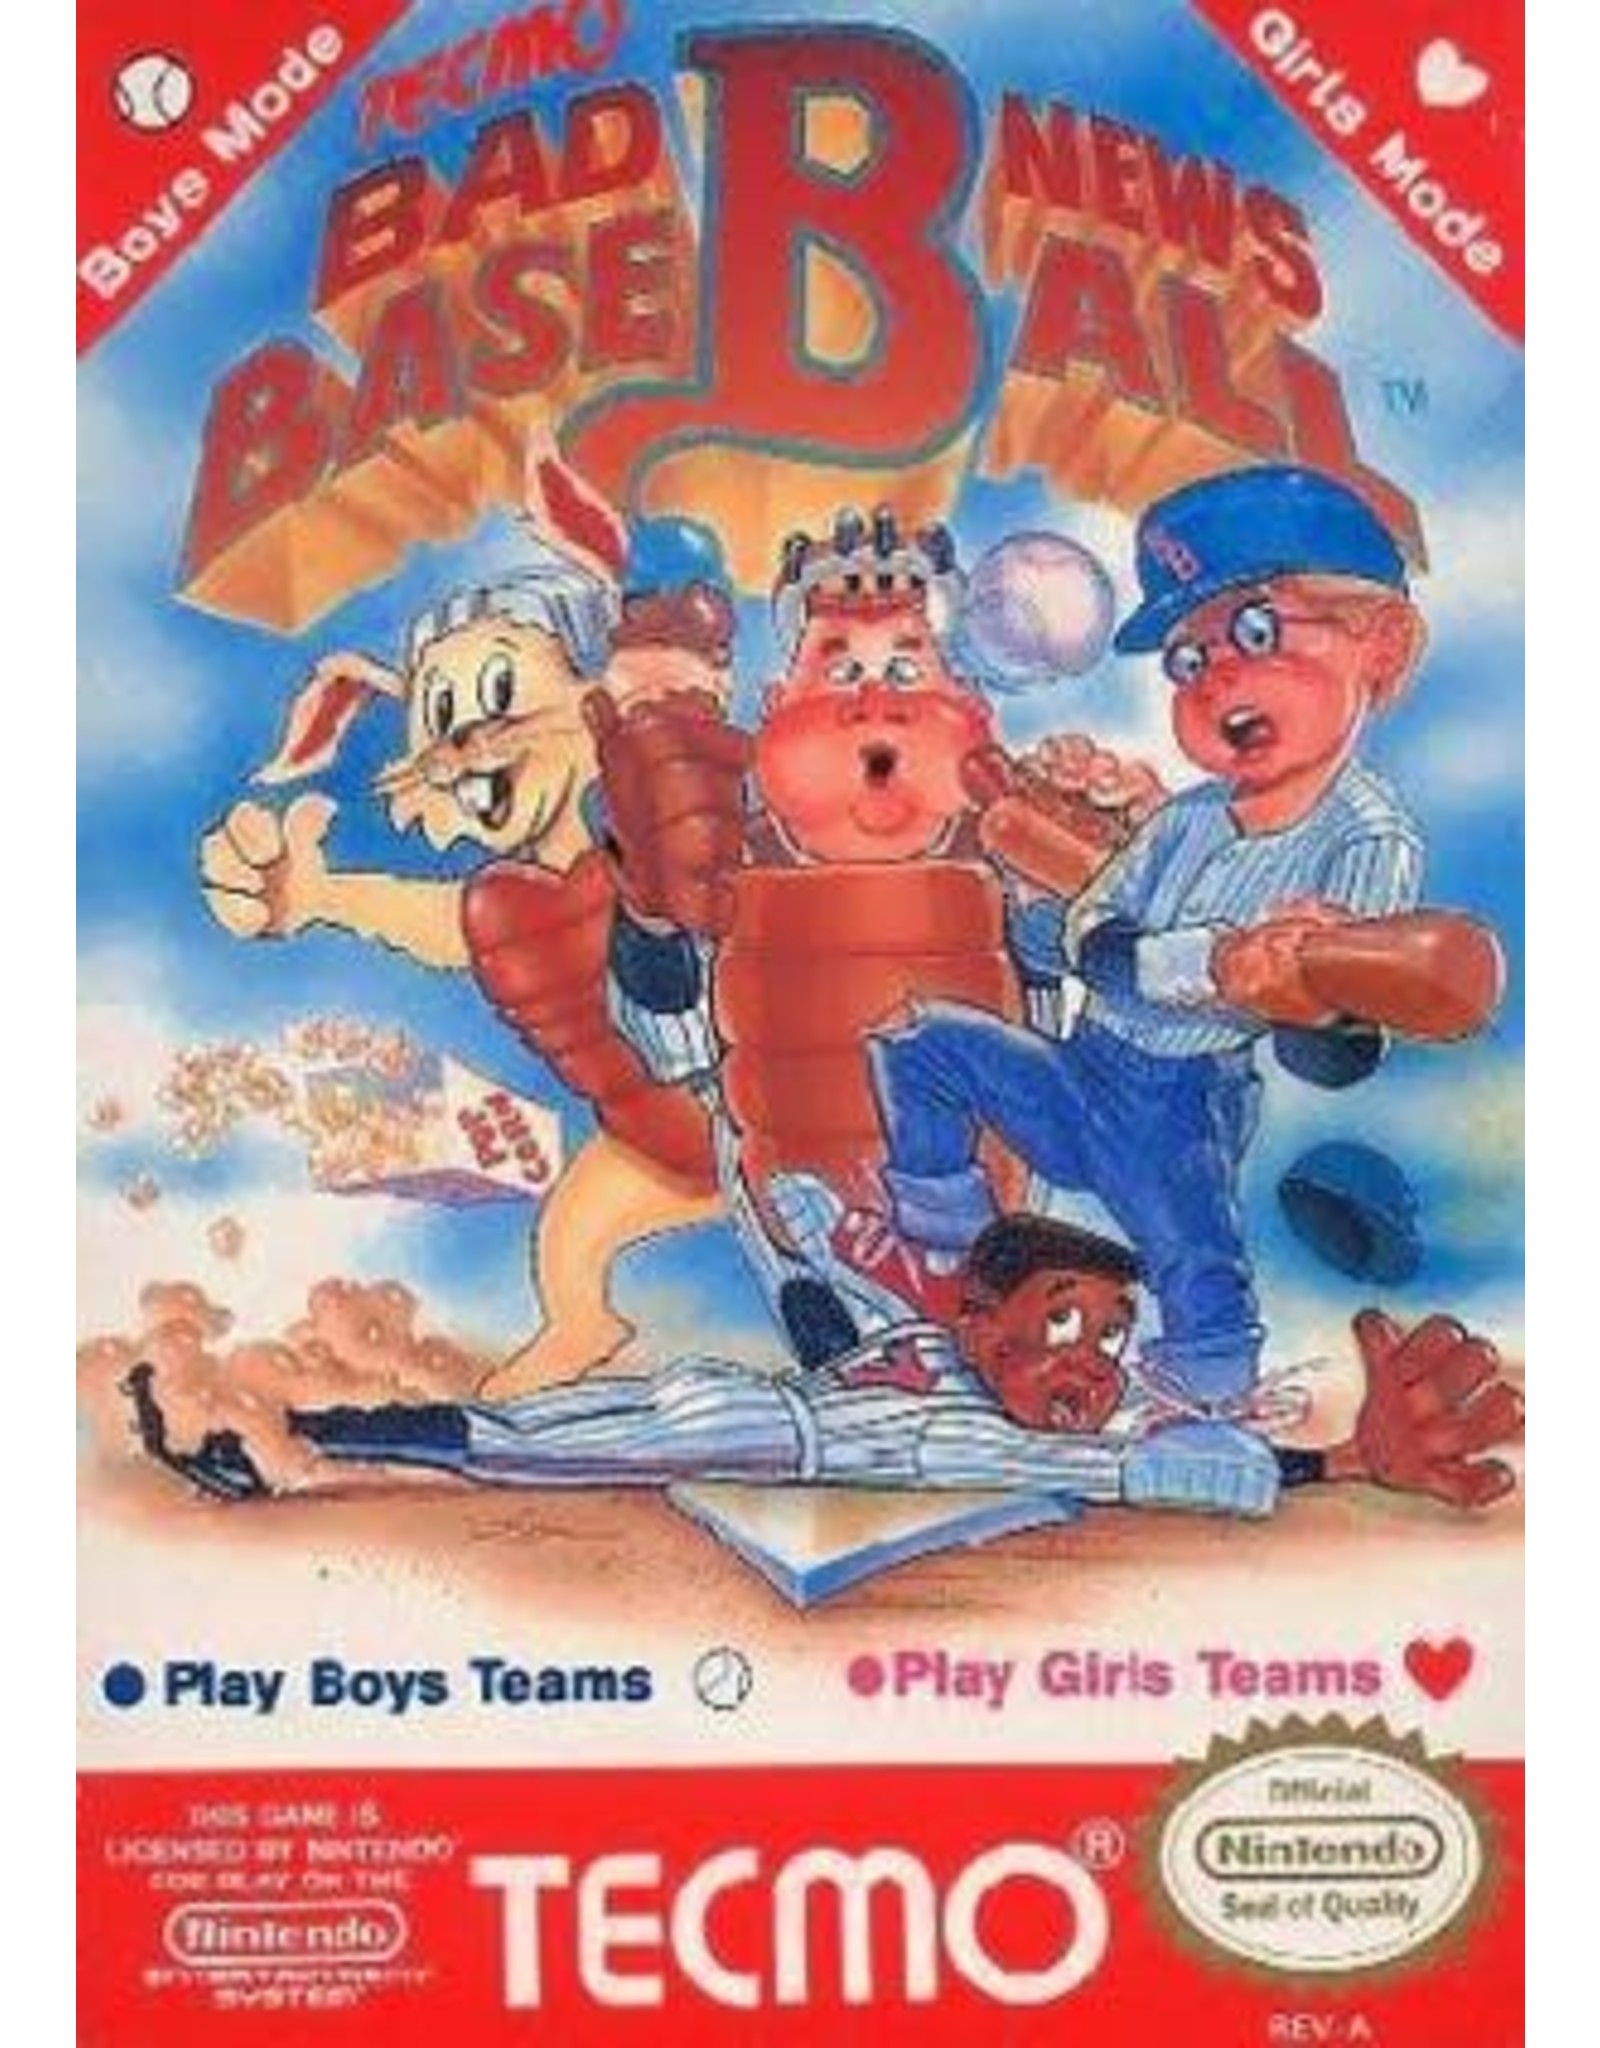 NES Bad News Baseball (Cart Only)